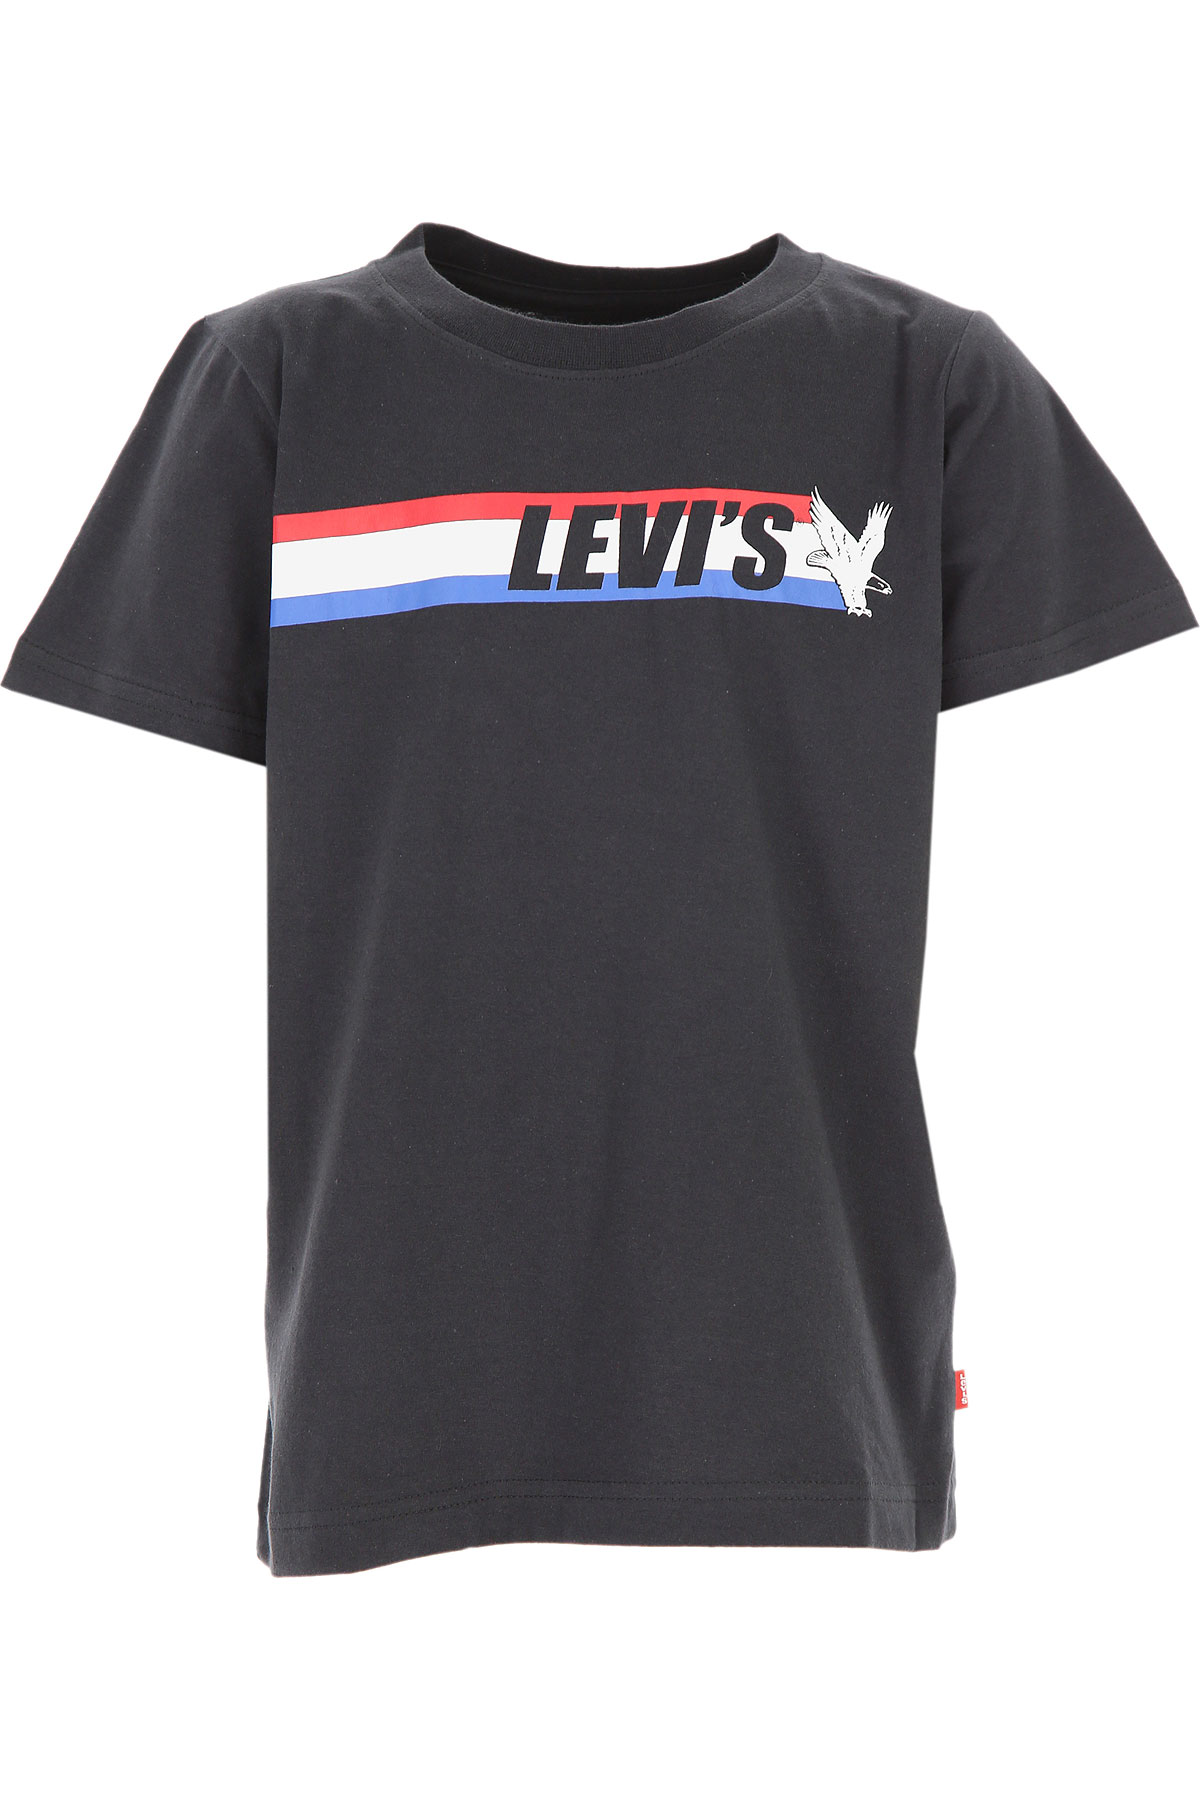 Levis Kinder T-Shirt für Jungen Günstig im Sale, Dunkelblau, Baumwolle, 2017, 14Y 16Y 8Y